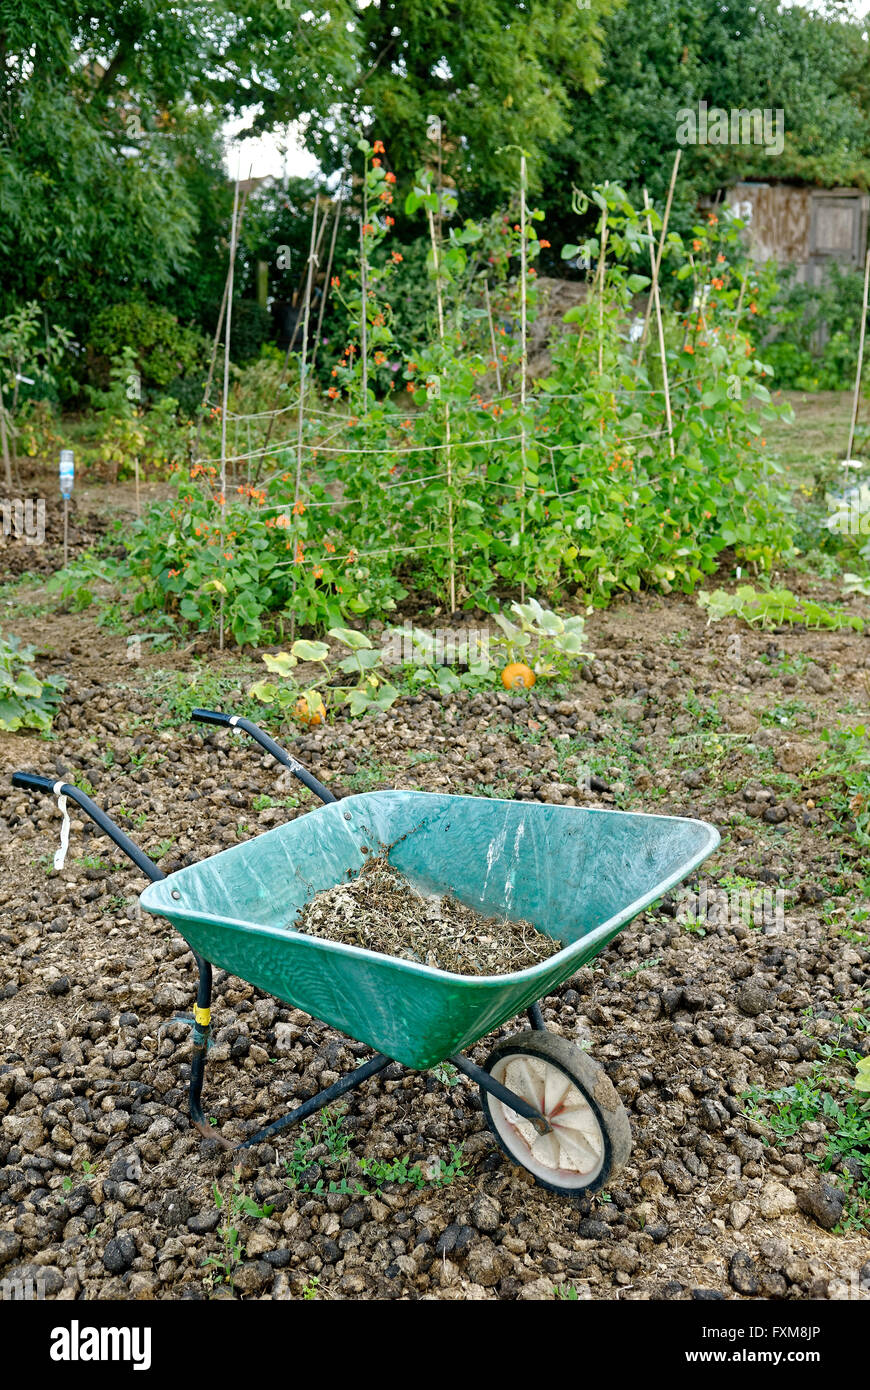 Jardín de adjudicación donde la tierra está disponible para uso personal el cultivo de frutas y hortalizas. Foto de stock